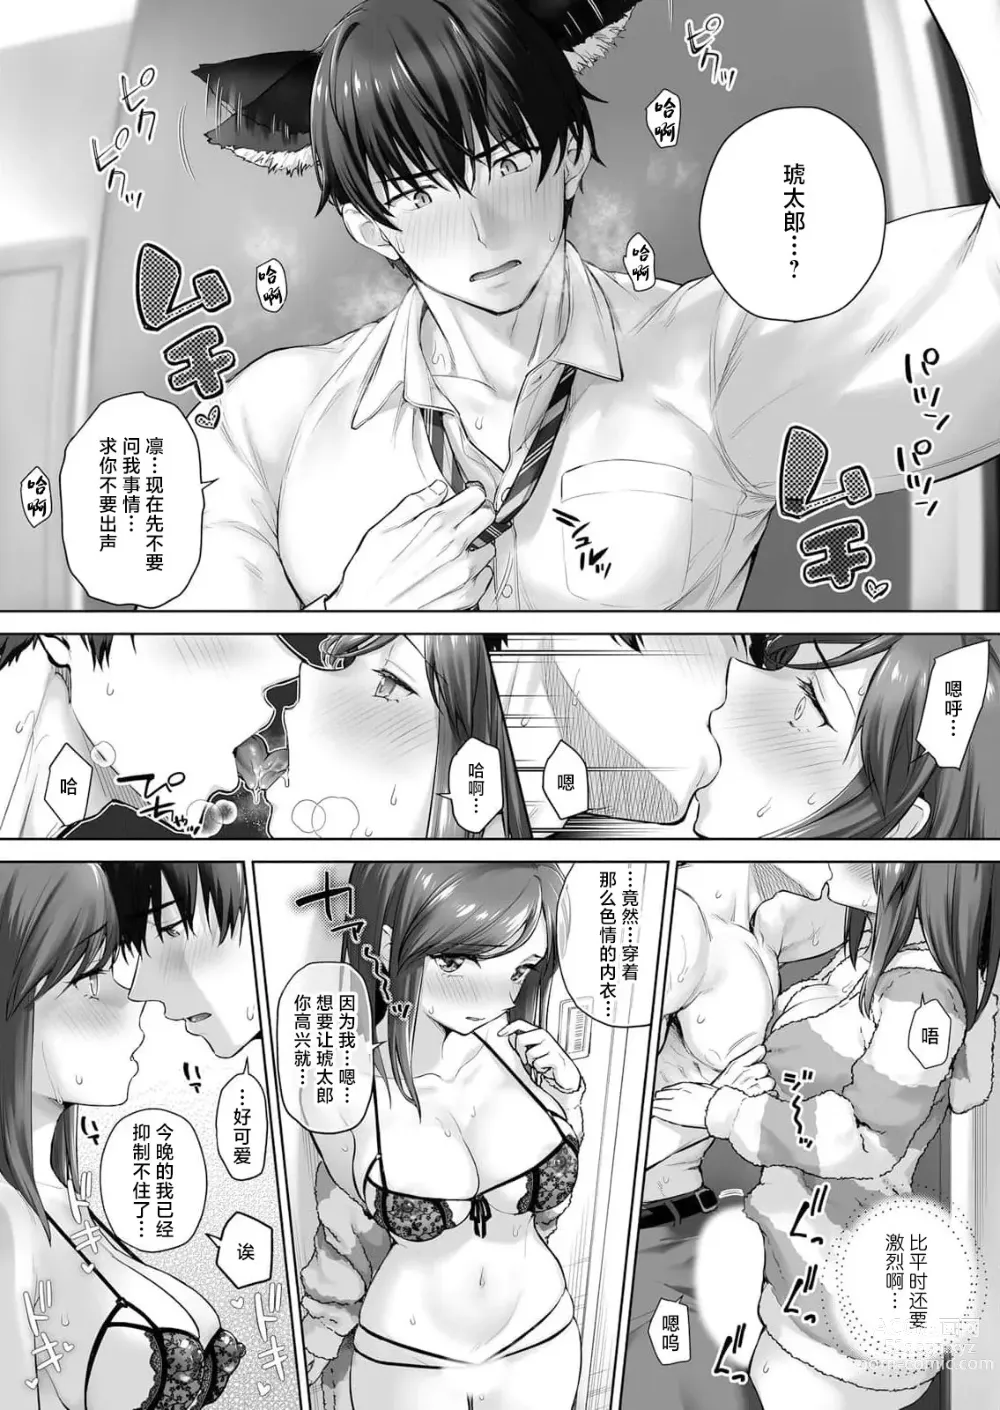 Page 6 of manga 在满月之夜与变身为野兽的兽耳男友进行的肉食系SEX实在太过激烈…